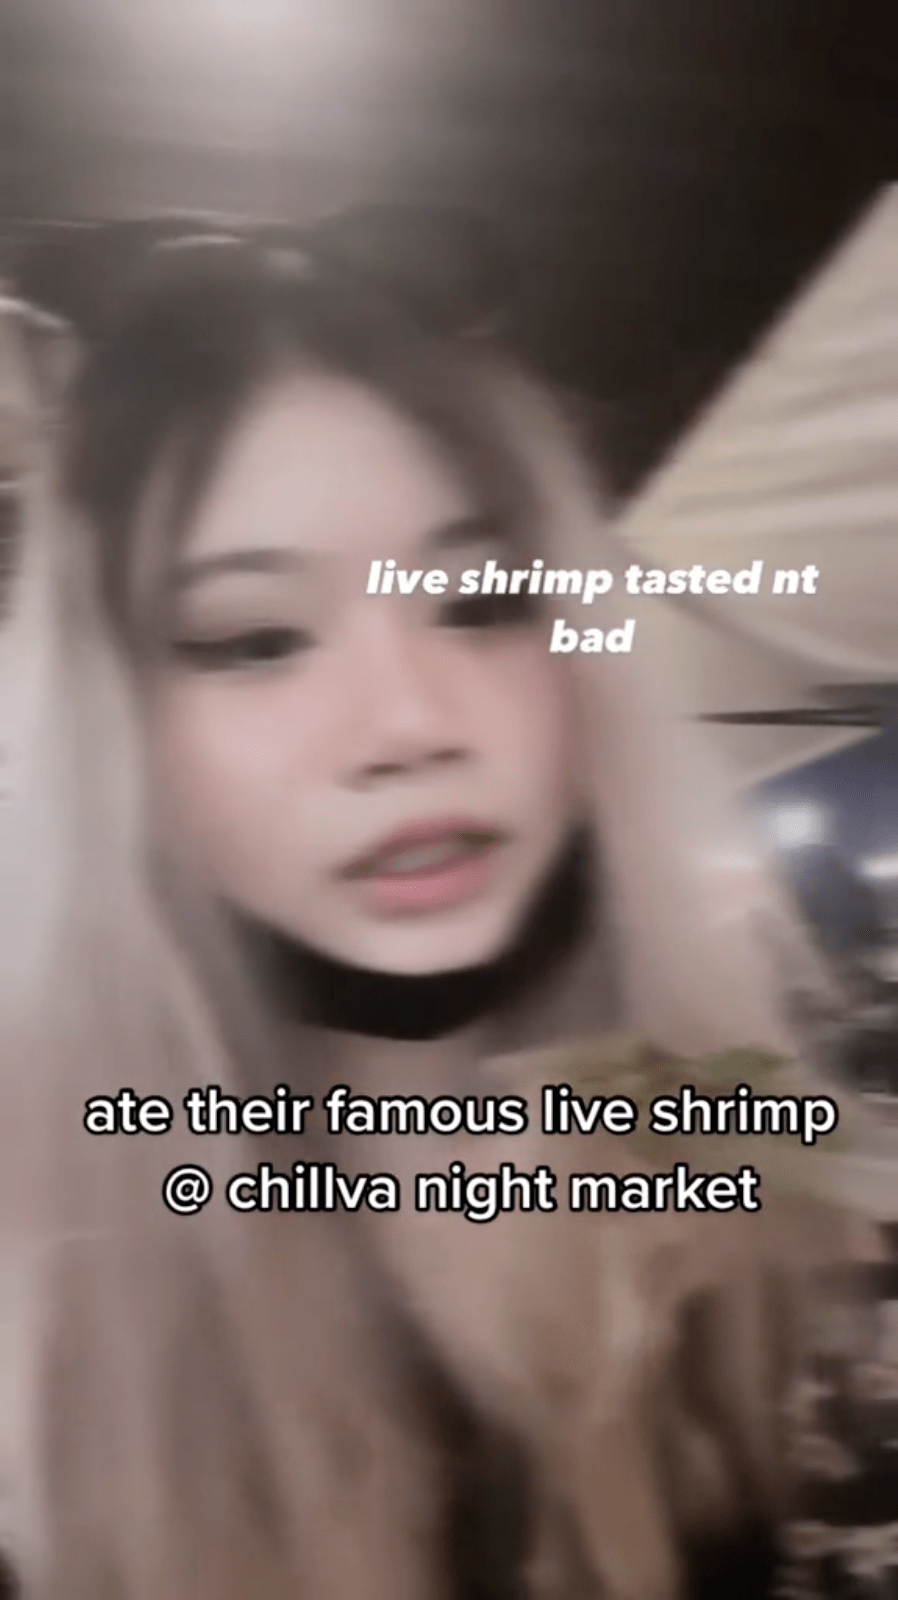 dancing shrimp food poisoning